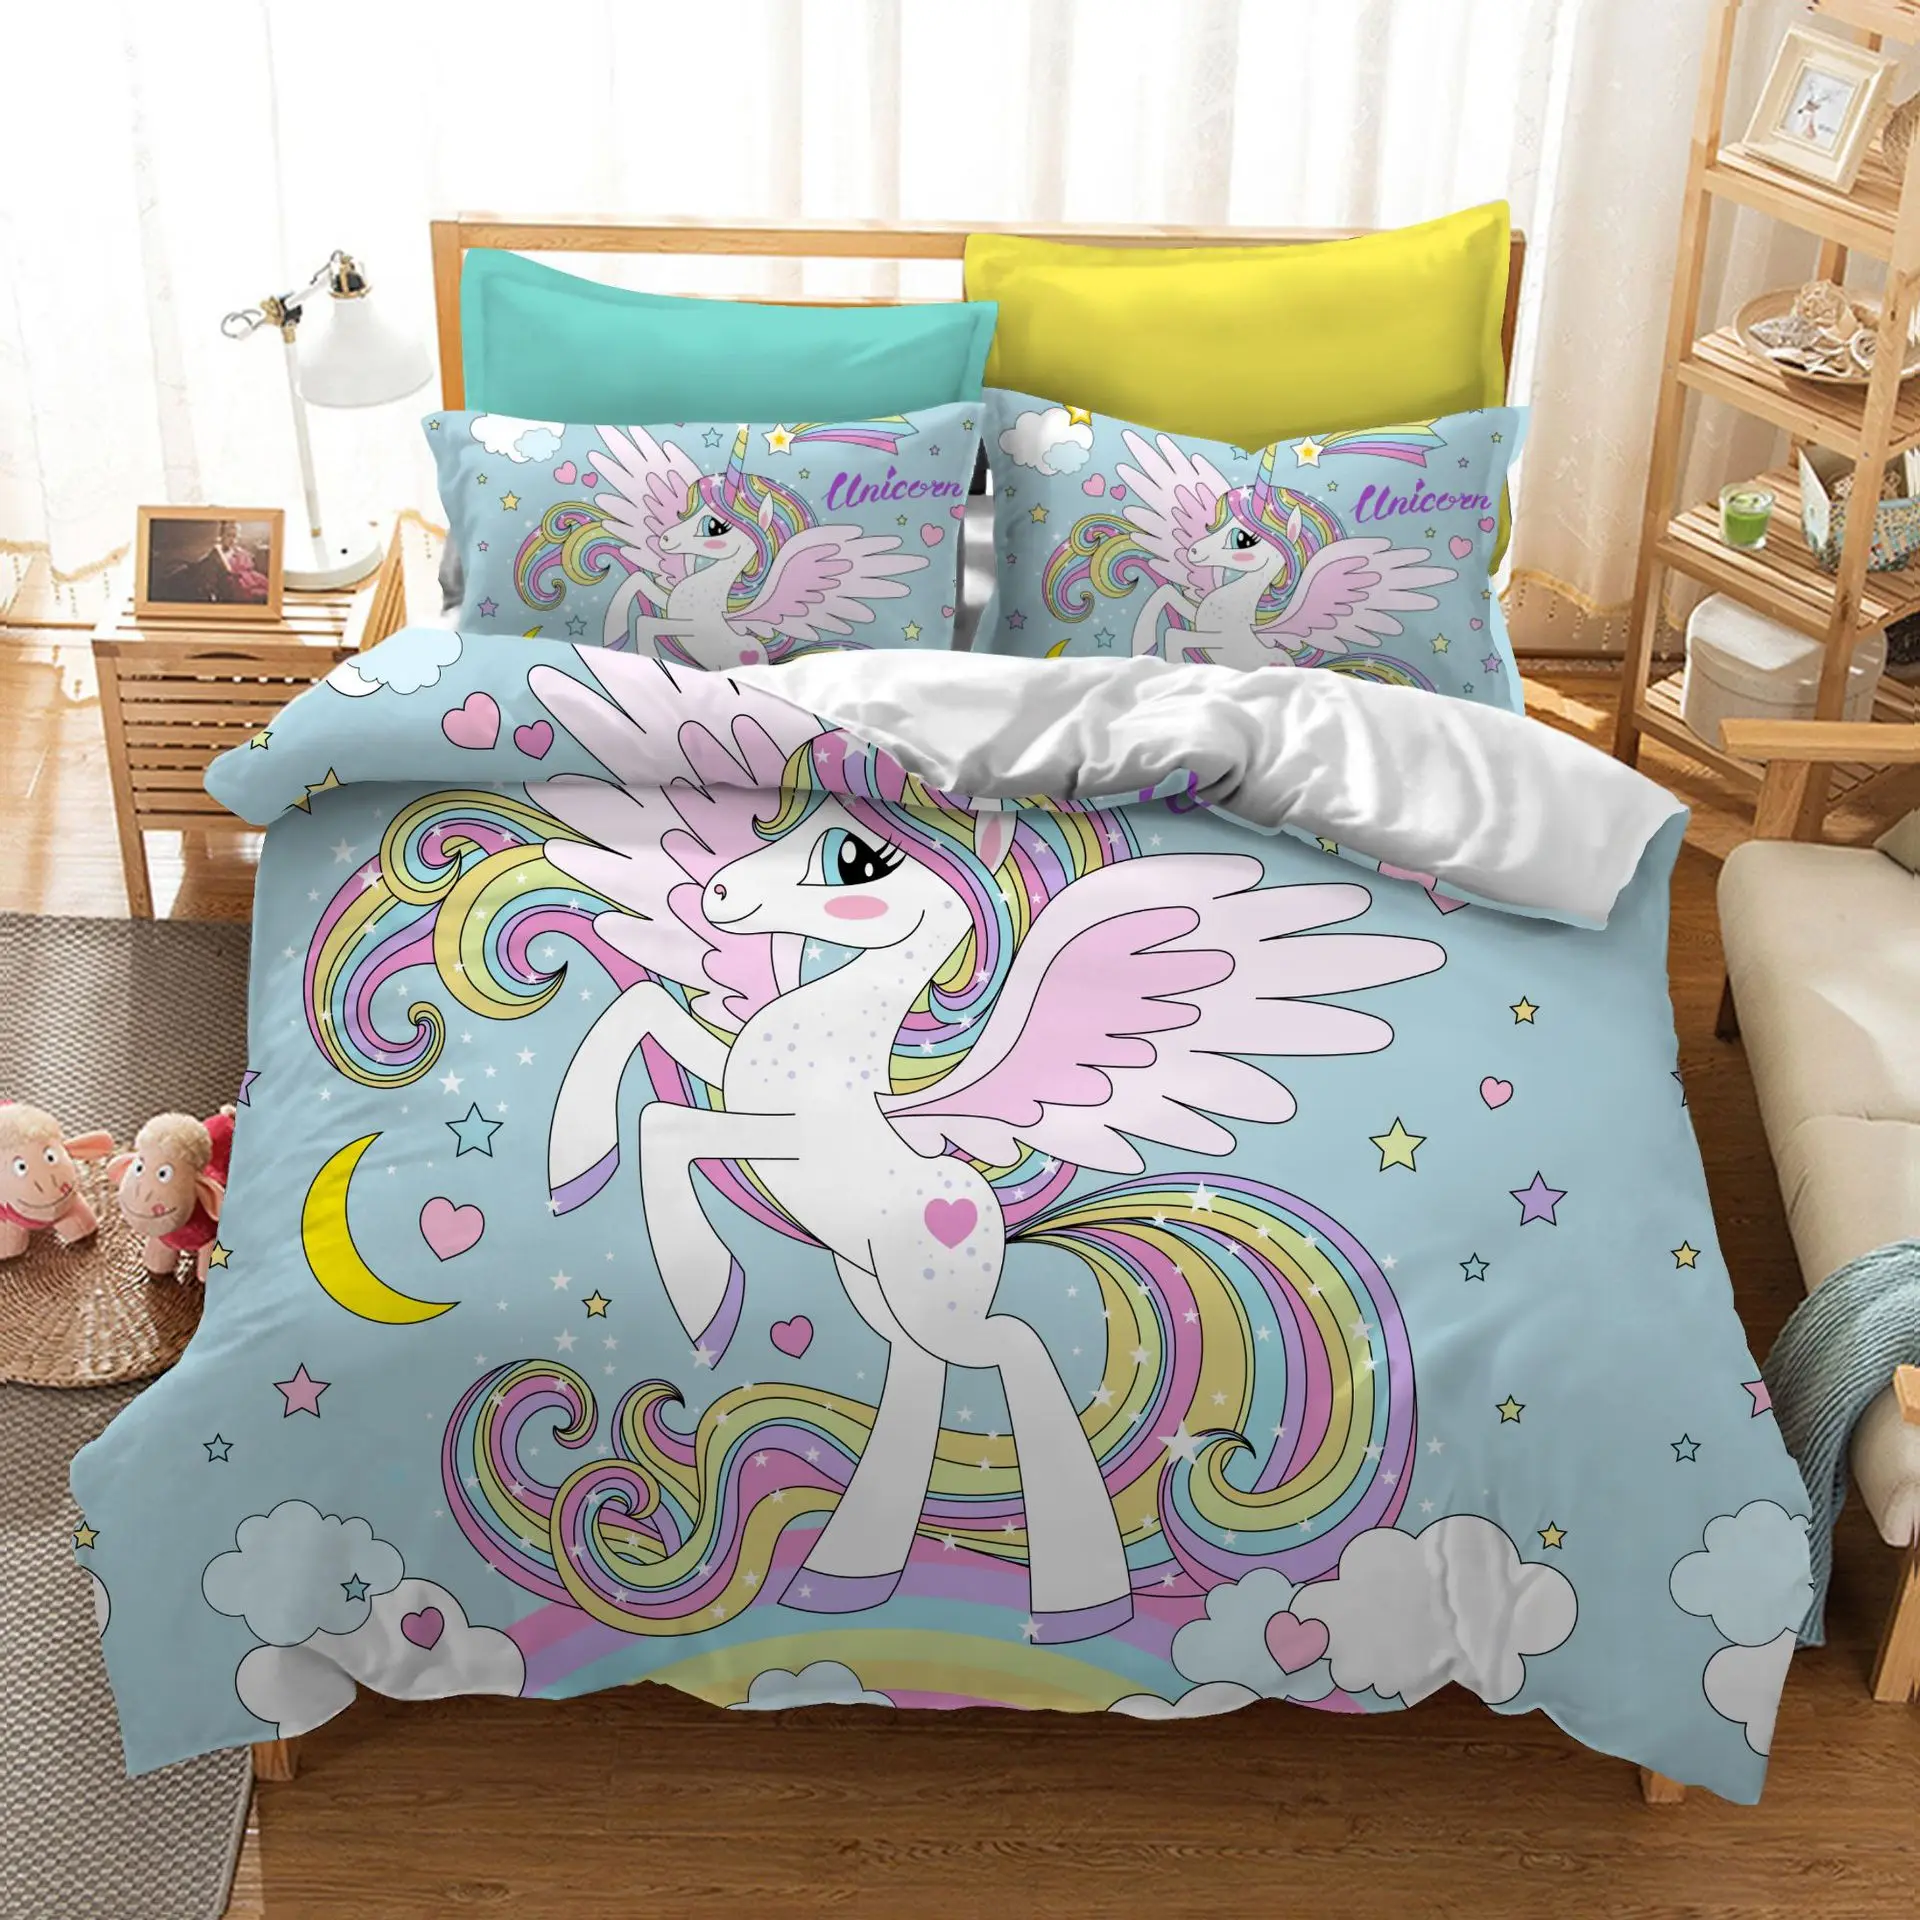 Лучшее. WENSD, качественное милое одеяло для кровати с единорогом, цветное постельное белье принцессы, розовый комплект постельного белья для детей и взрослых - Цвет: as picture